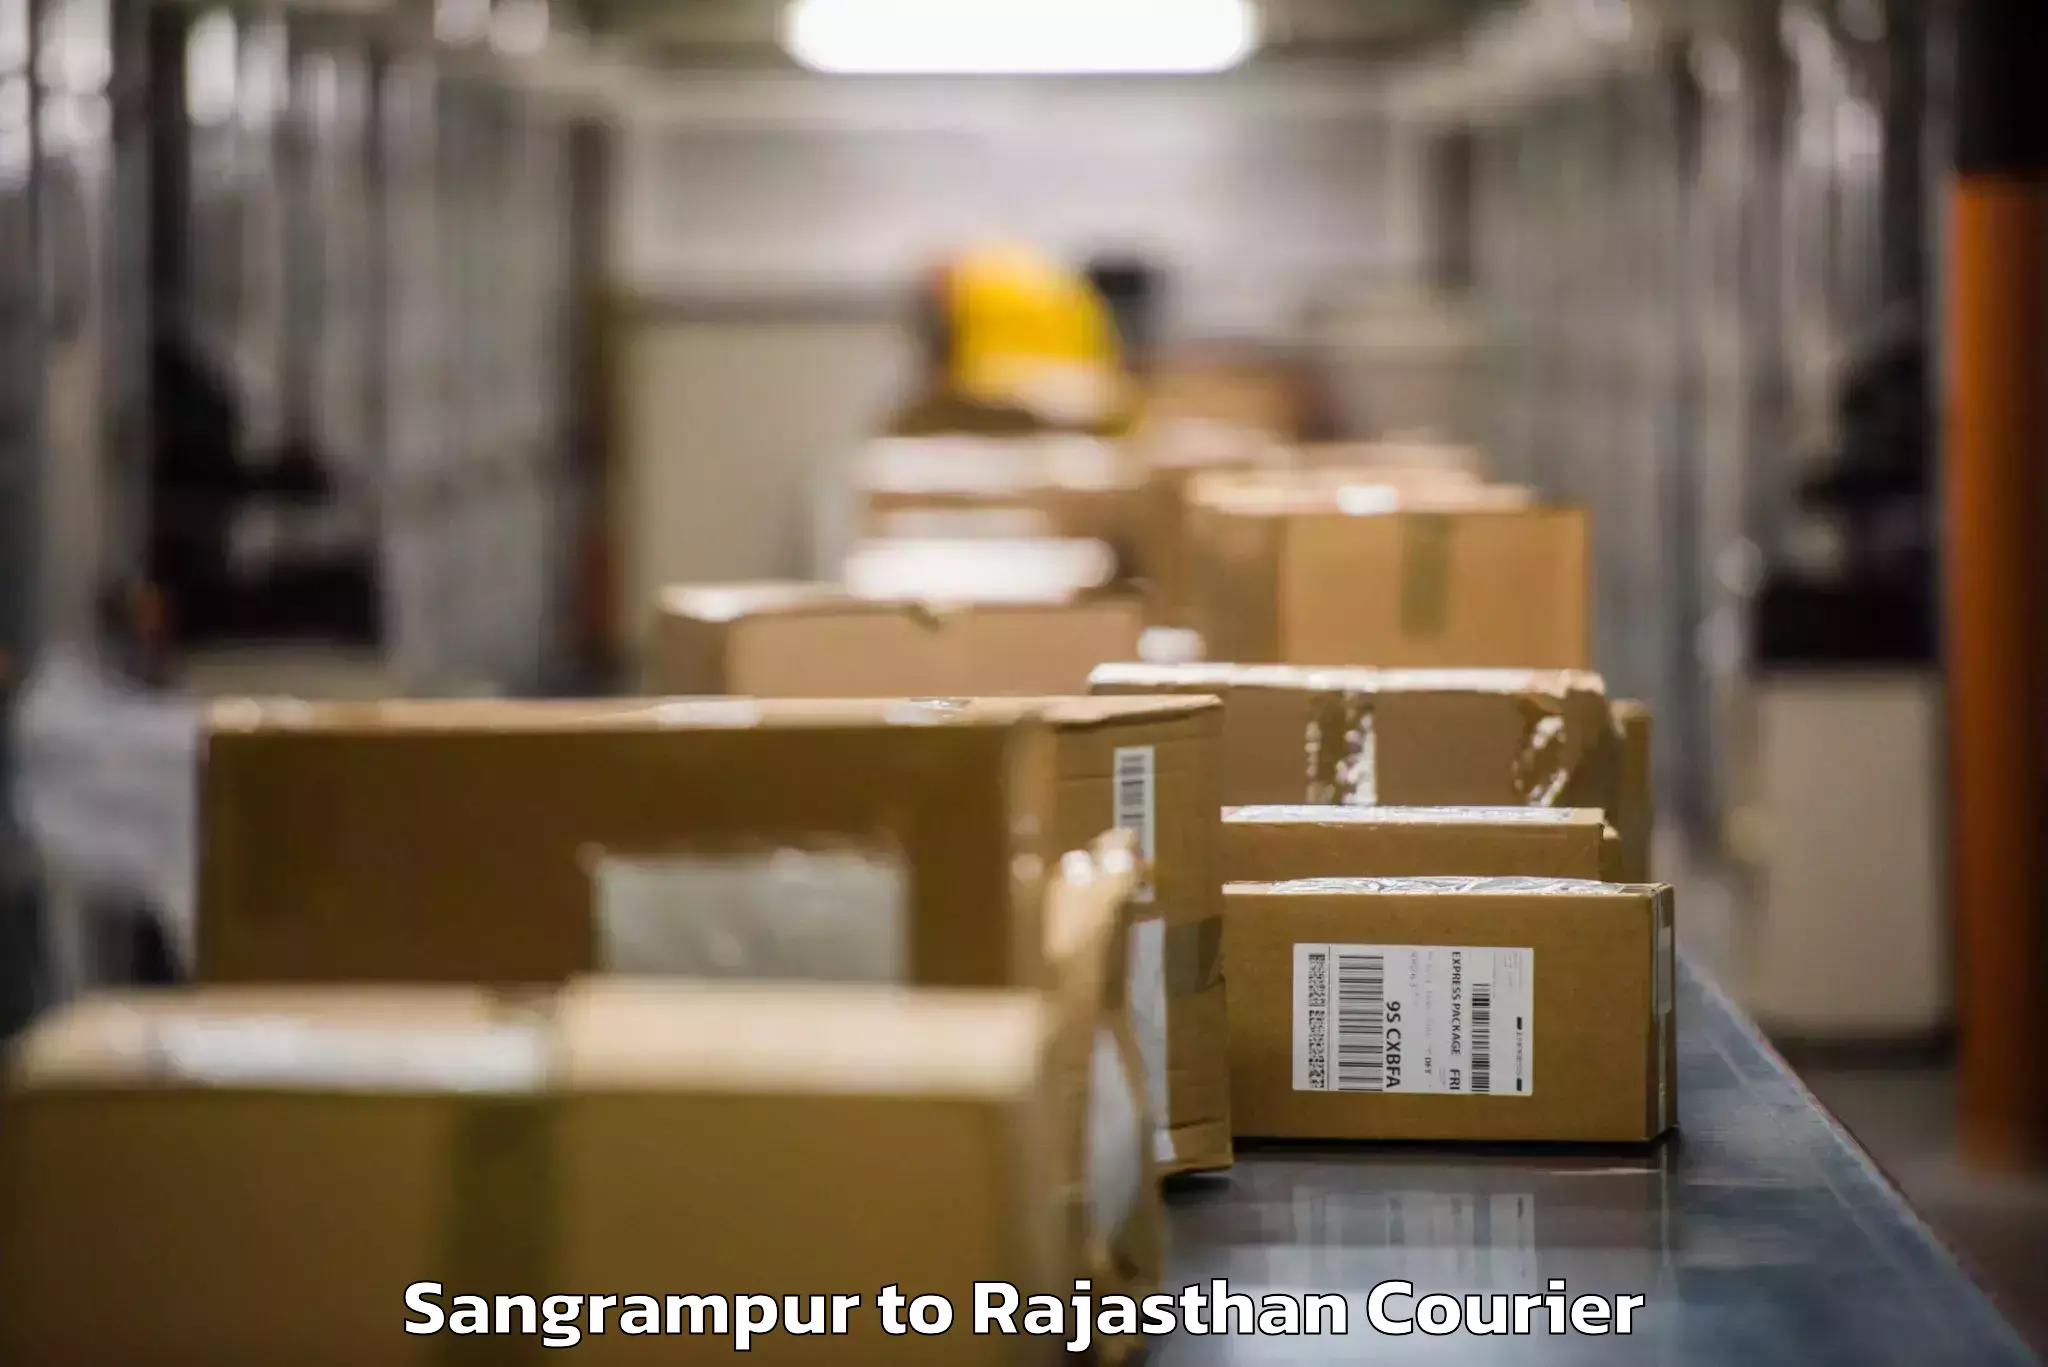 Baggage transport management Sangrampur to Deenwa